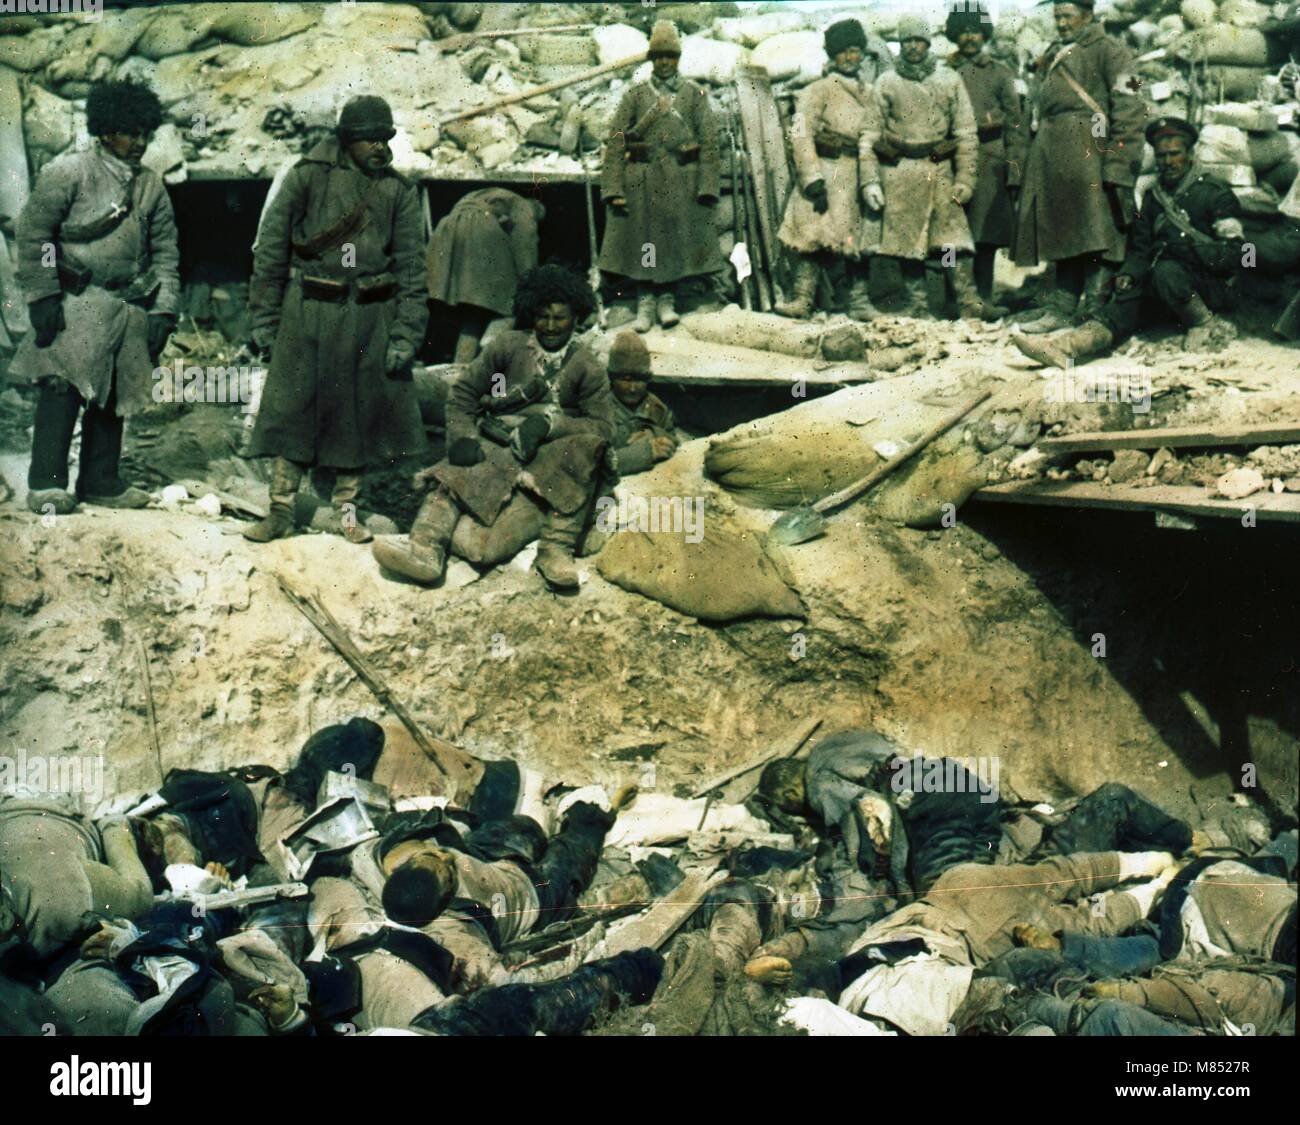 Photo colorisée des soldats russes debout dans une tranchée au-dessus des cadavres de soldats japonais morts pendant la guerre russo-japonaise, 1905. (Photo de Burton Holmes) Banque D'Images